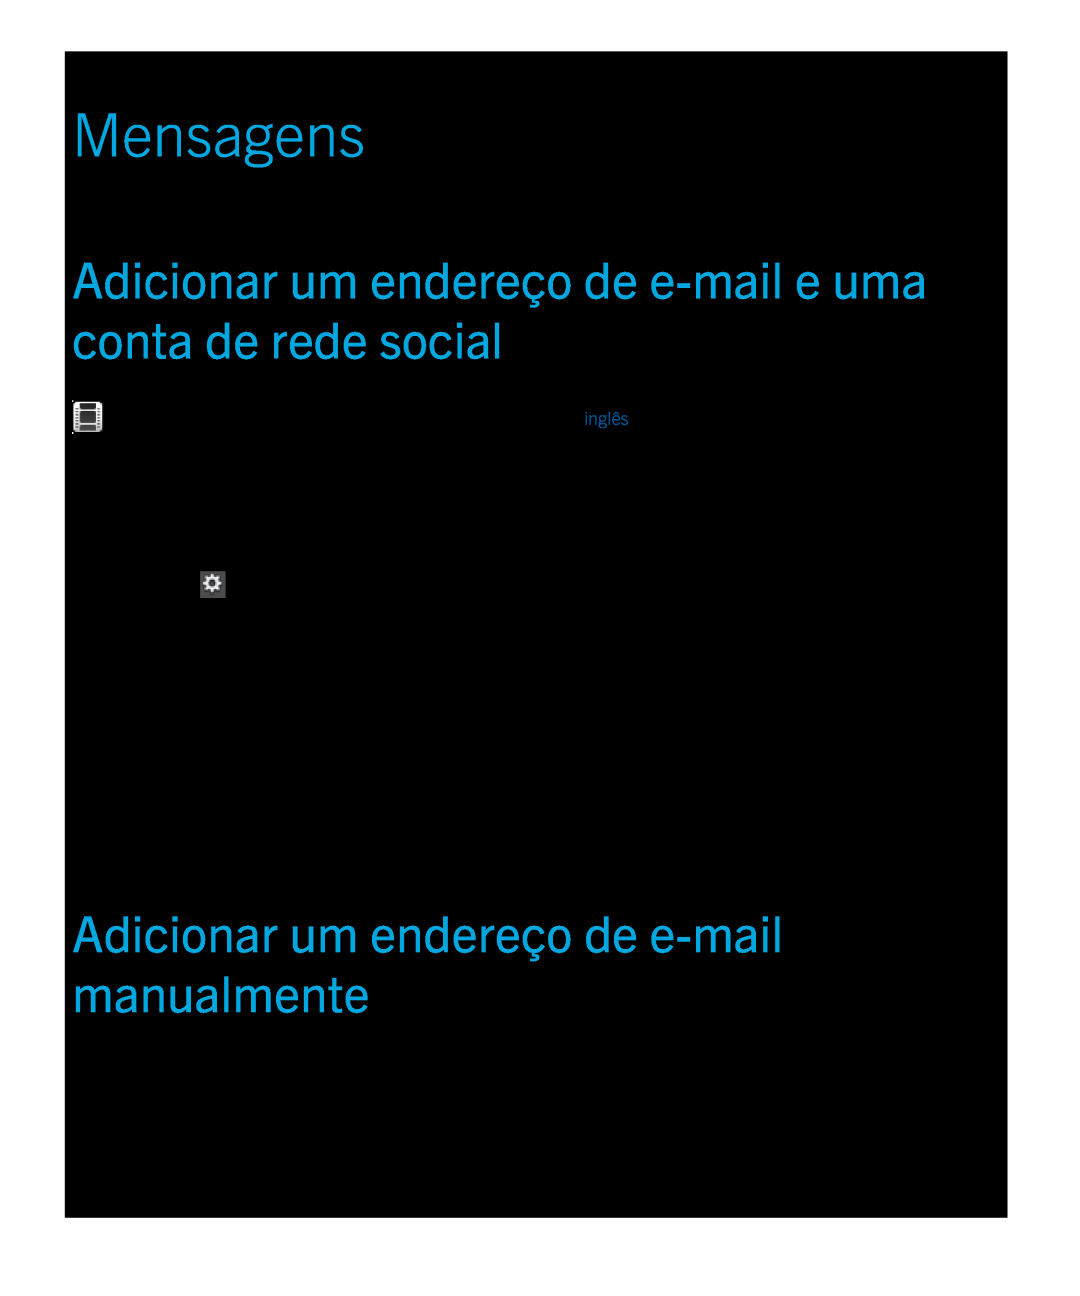 Blackberry 2.0.1 manual Mensagens, Adicionar um endereço de e-mail e uma conta de rede social 